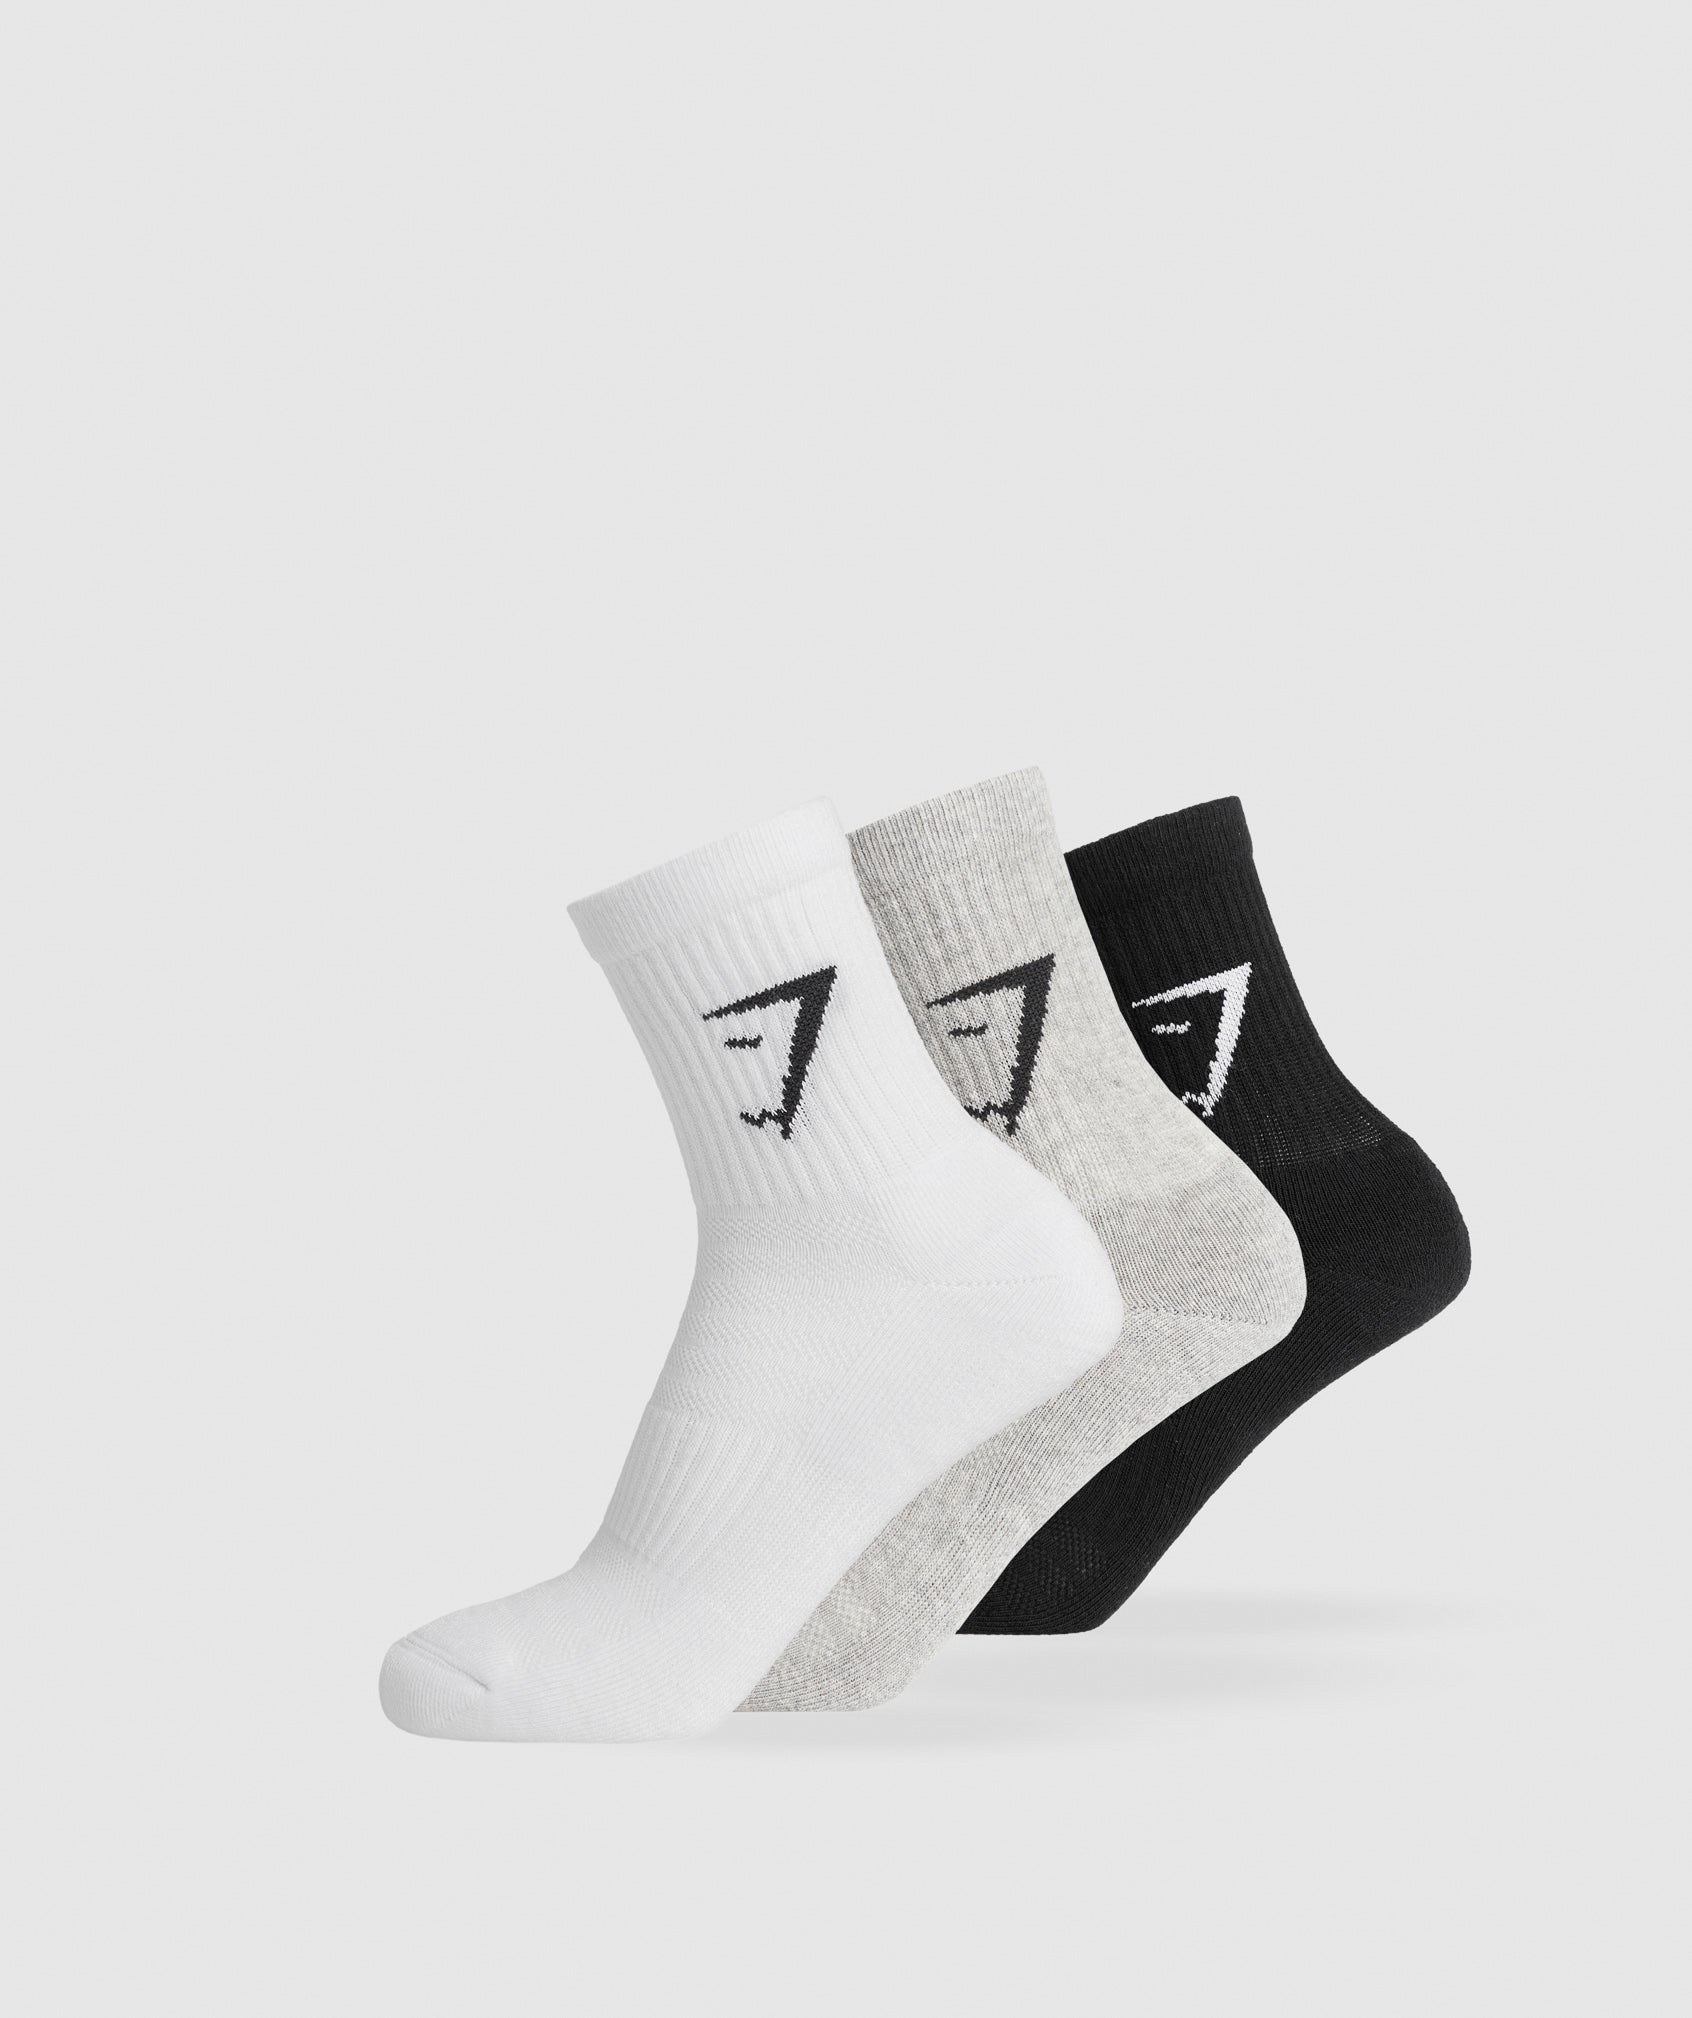 Midi 3pk Socks in White/Light Grey Core Marl/Black - view 1